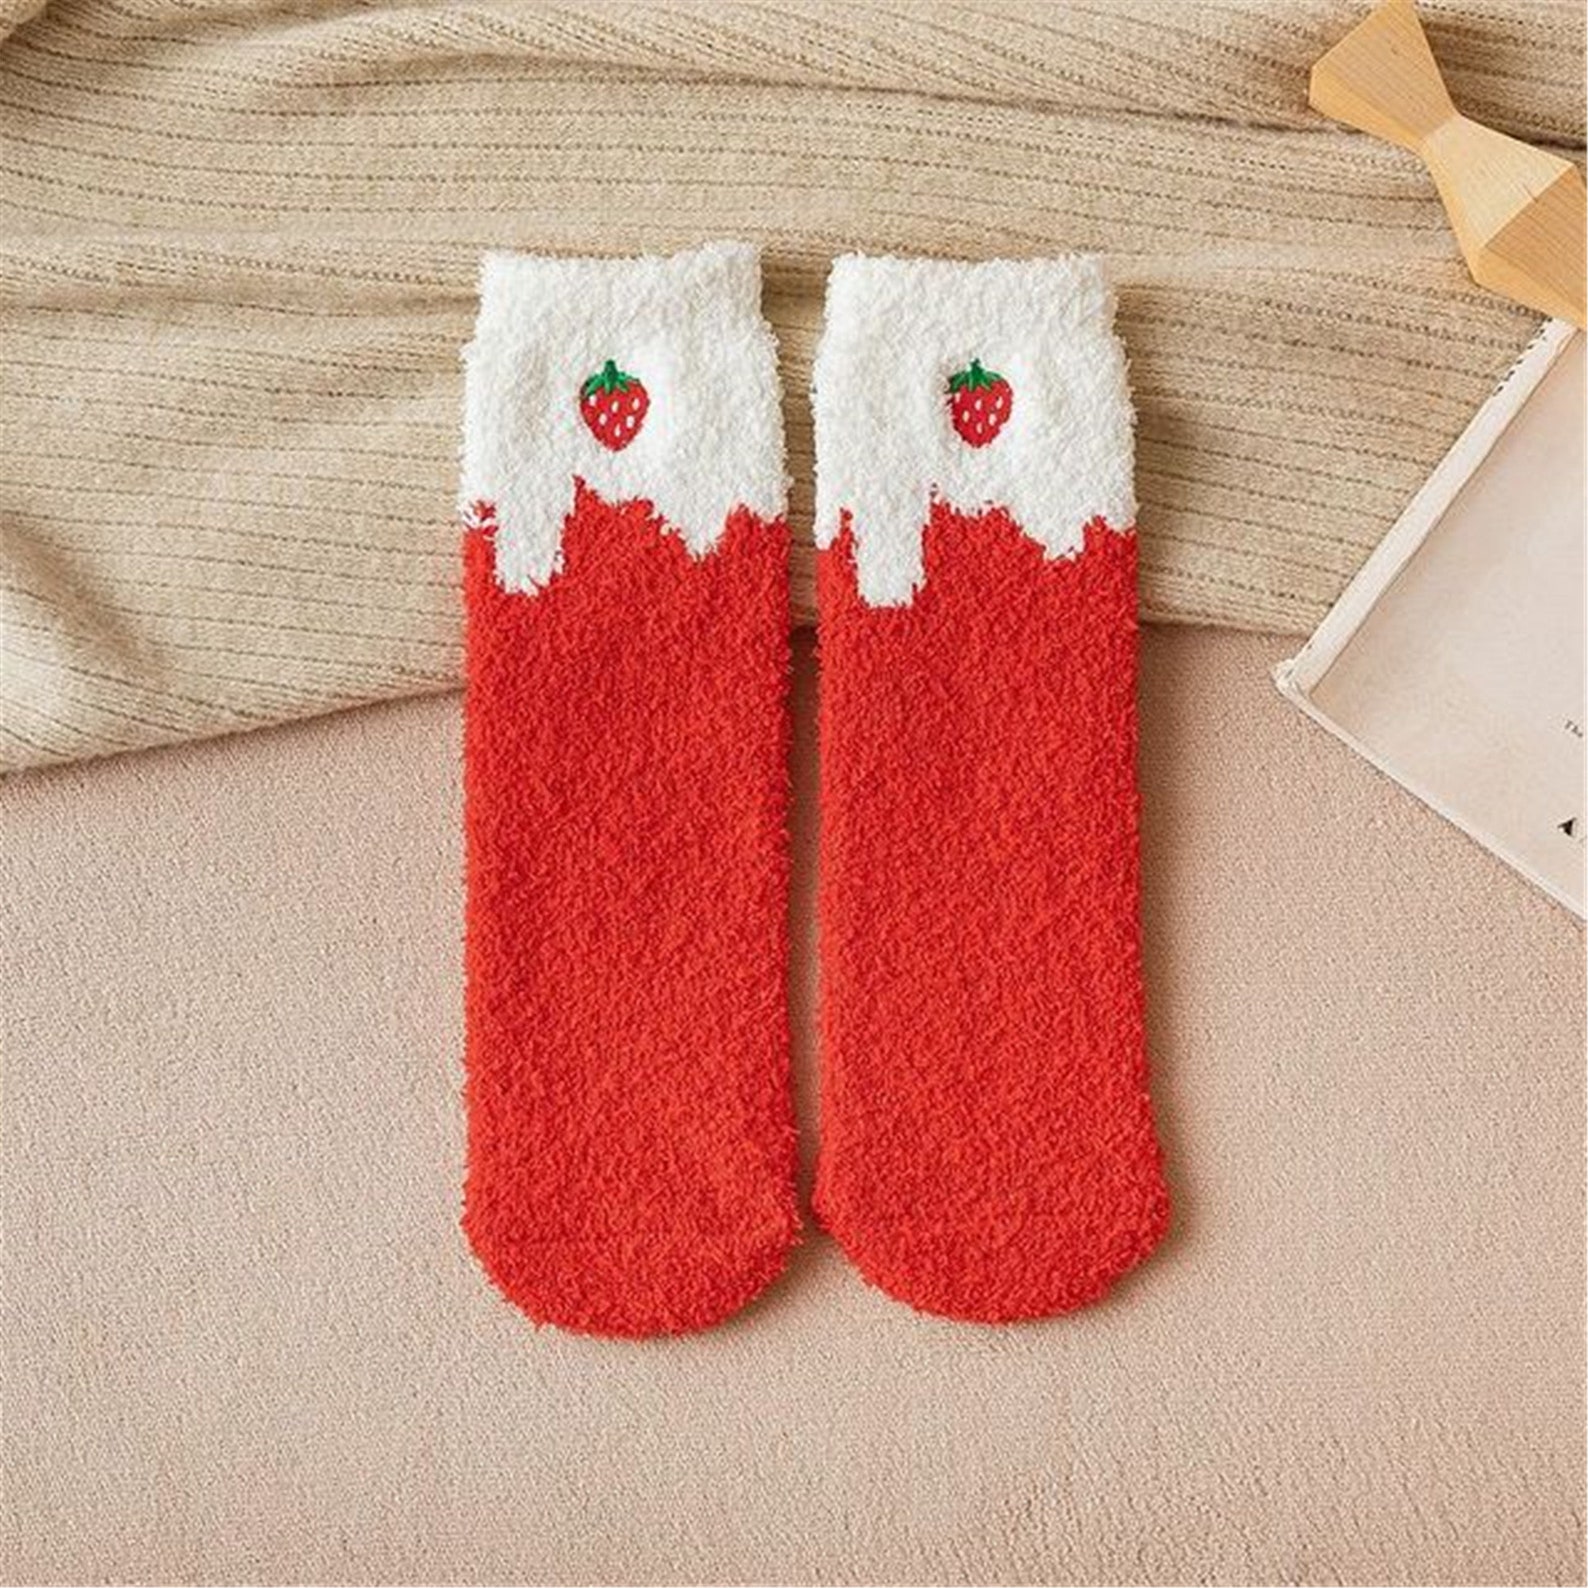 Cute Fruit Soft Fuzzy Socks Winter Slipper Sock Warm | Etsy